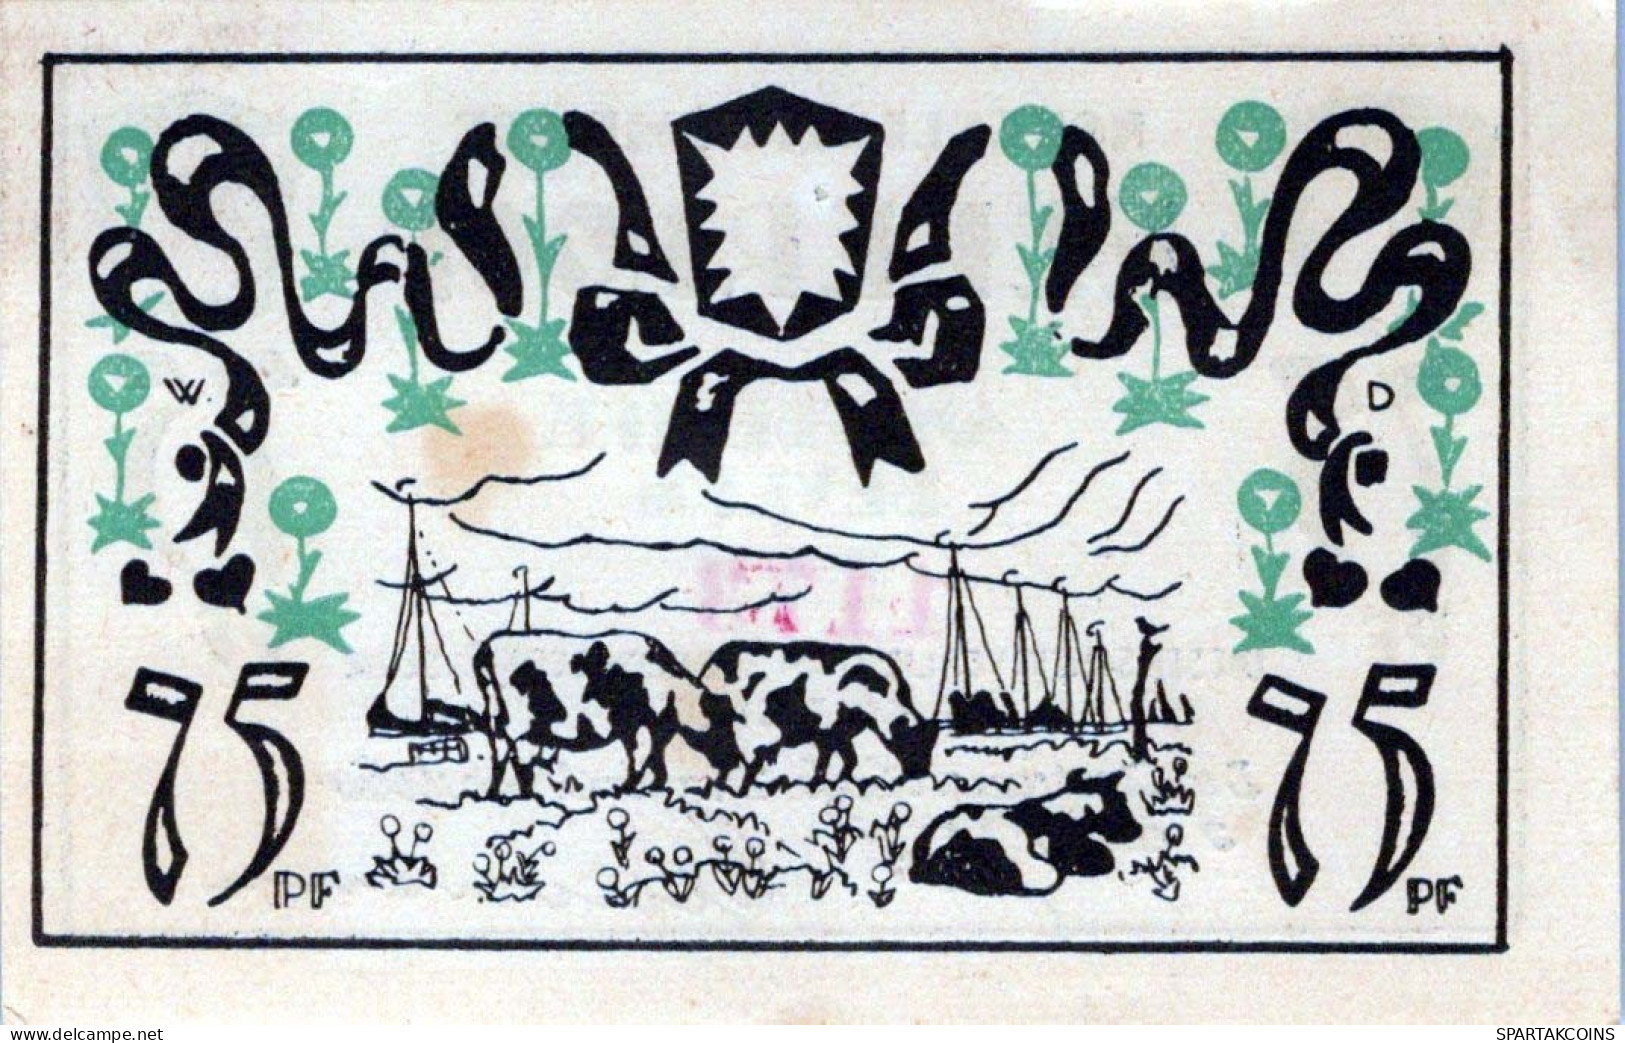 75 PFENNIG 1921 Stadt ELLERHOOP Schleswig-Holstein UNC DEUTSCHLAND #PB194 - [11] Local Banknote Issues